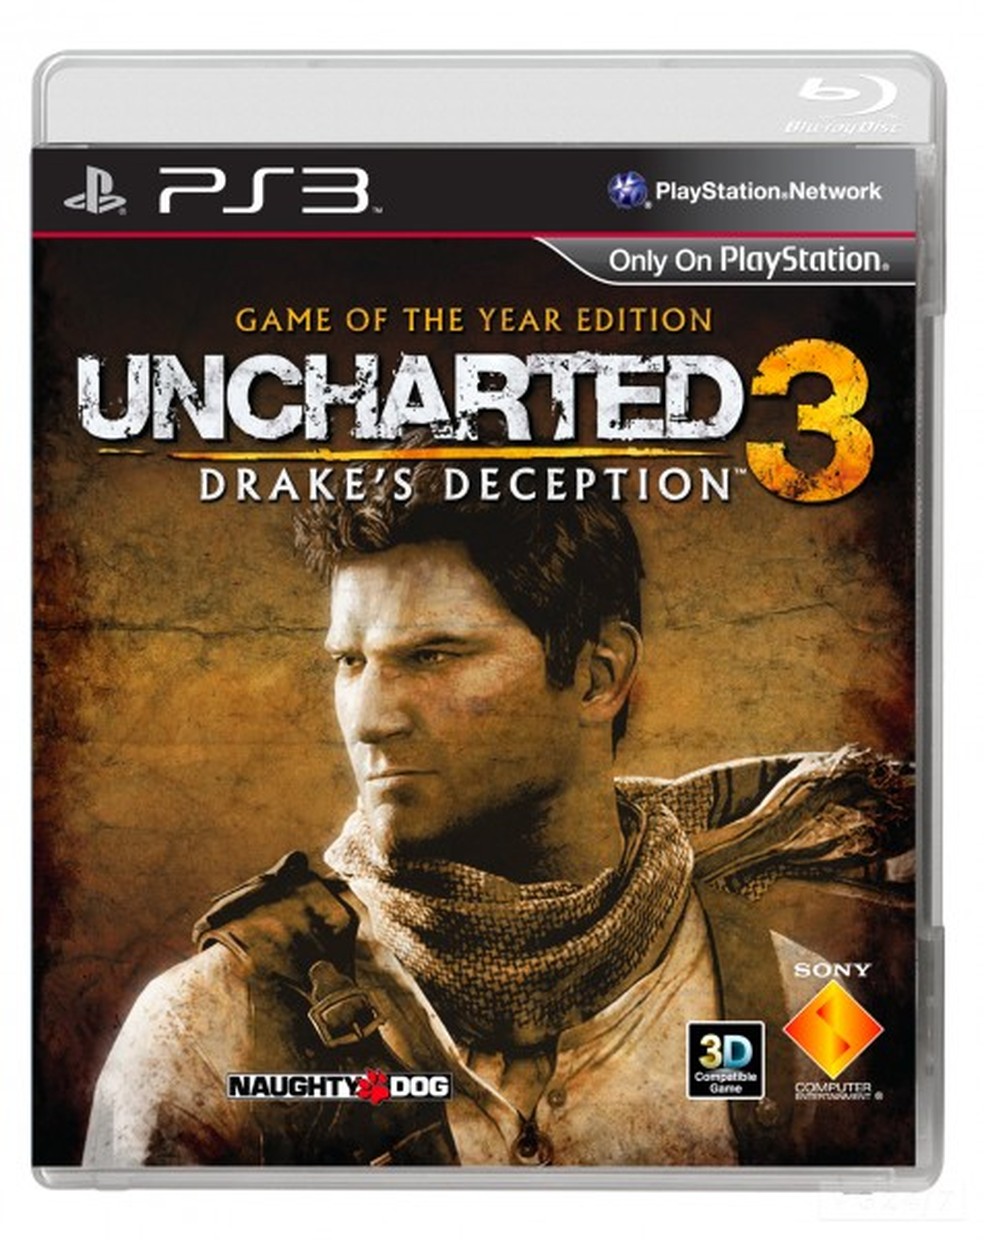 Dicas do troéu Neediest for Speediest do jogo Uncharted 3: Drake's